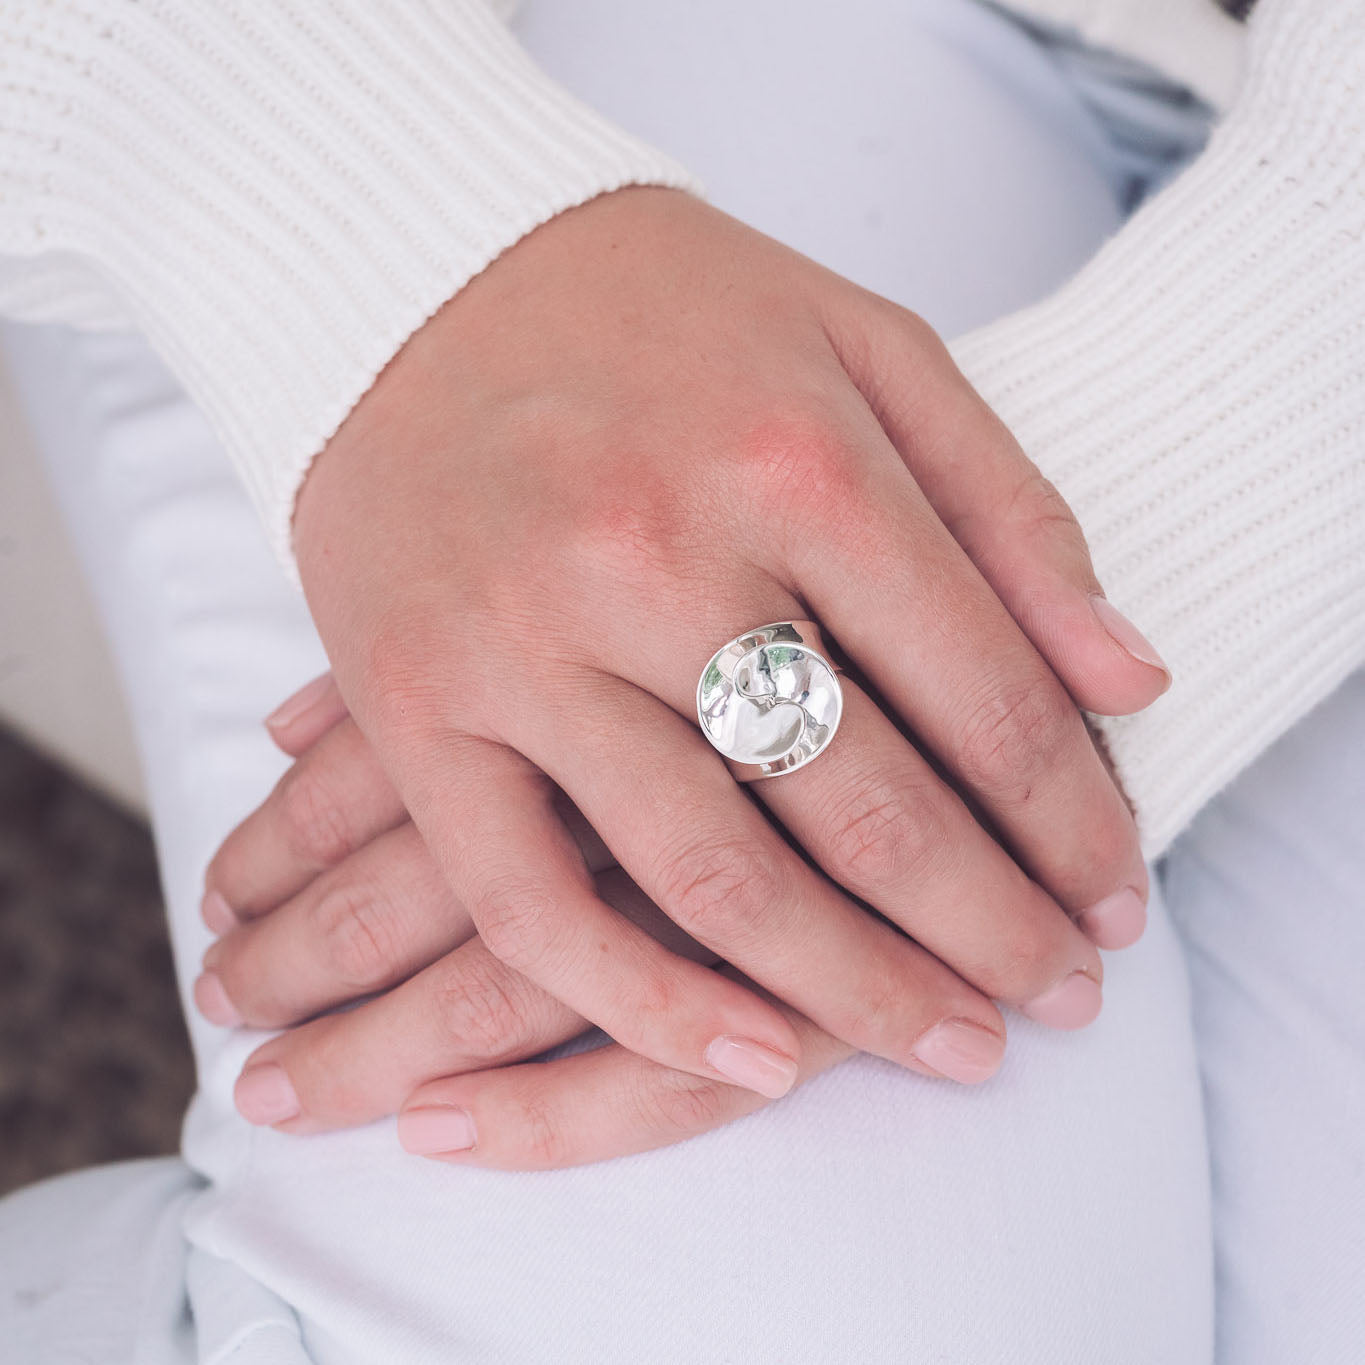 Handmade Silver Rosette Style Ring